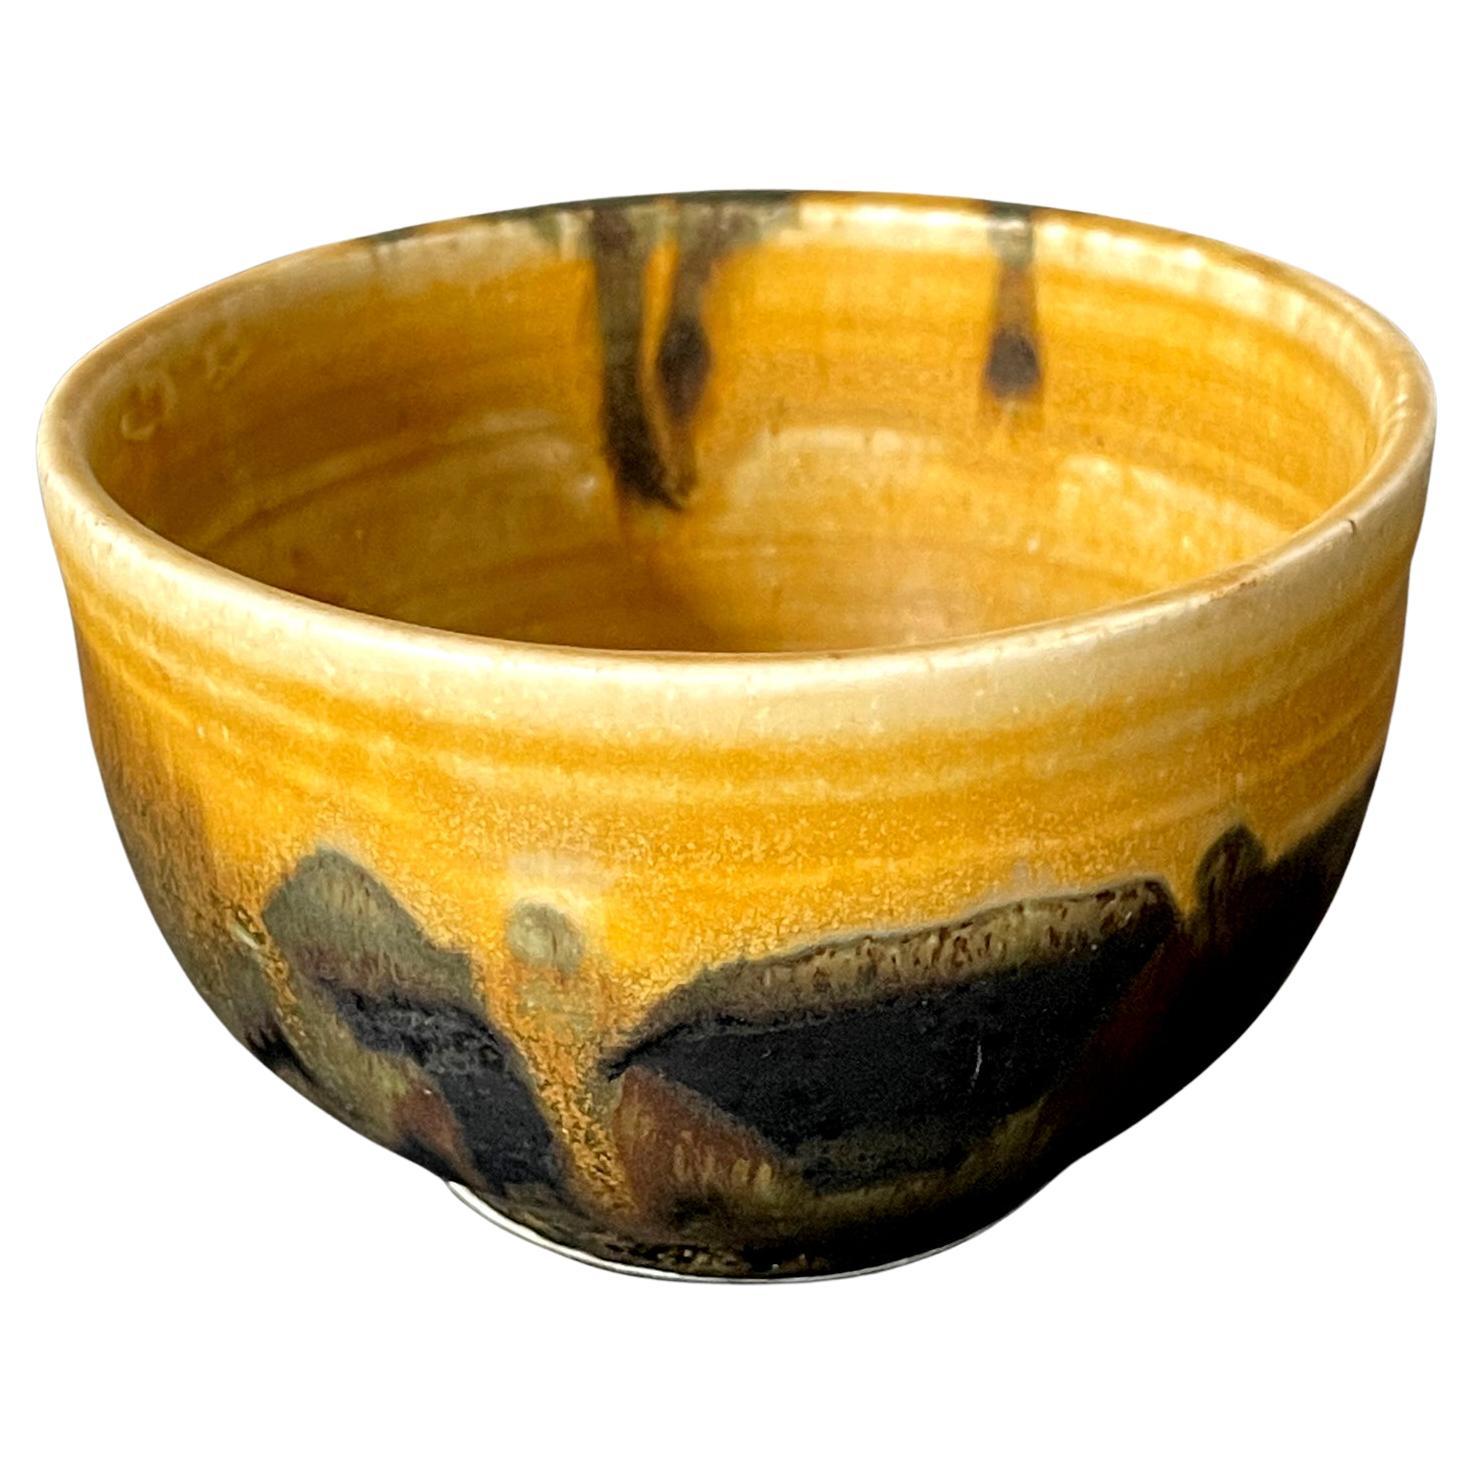 Glazed Ceramic Tea Bowl by Toshiko Takaezu